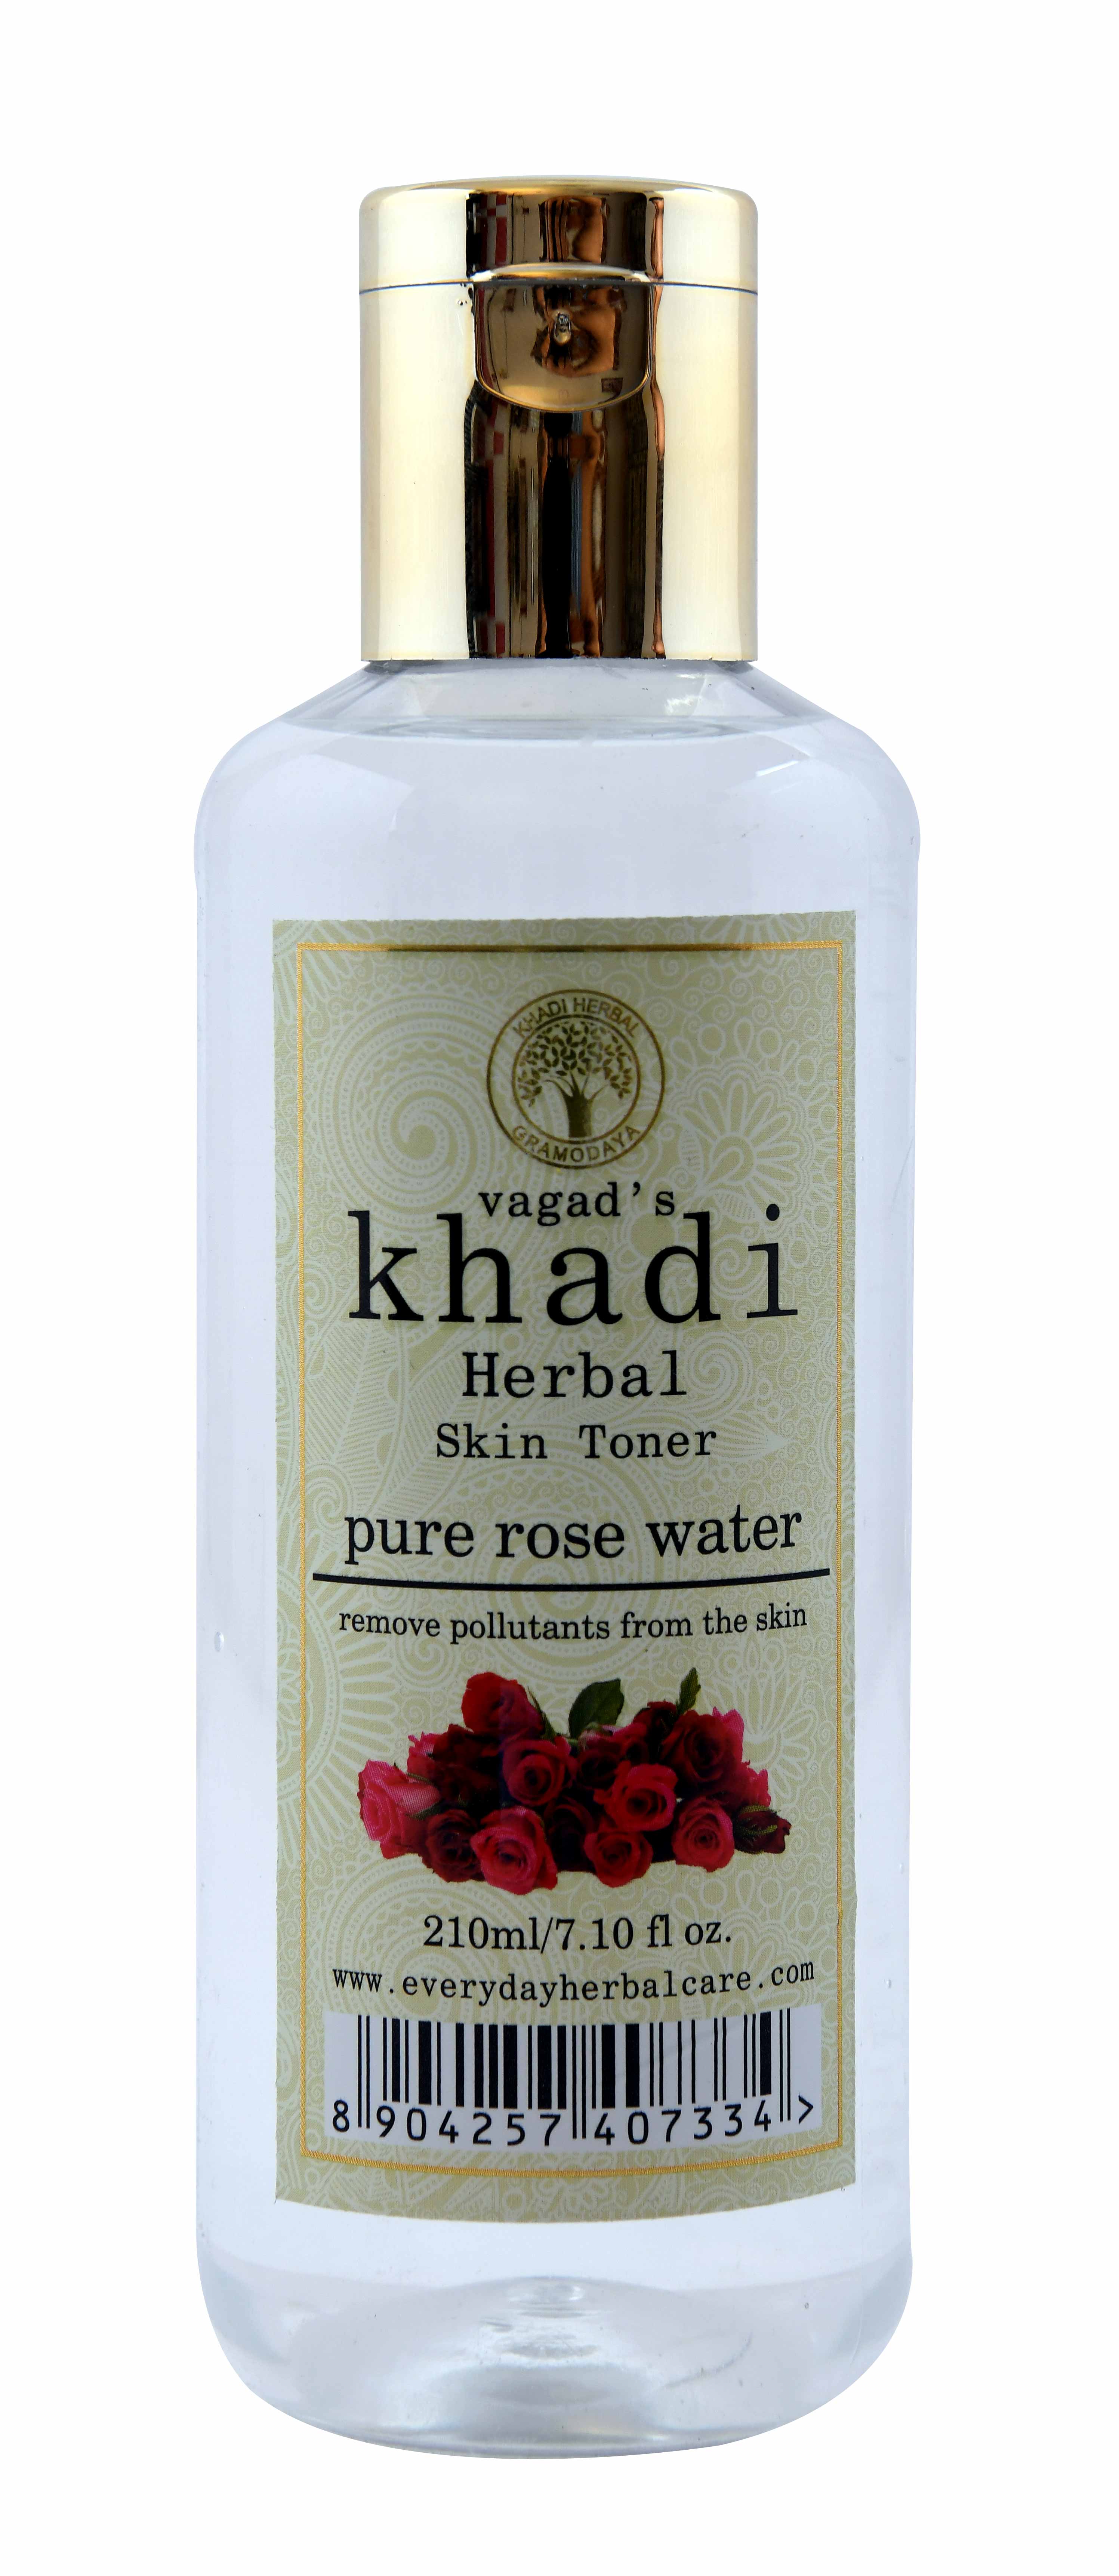 Vagad's Khadi Natural Rose Water